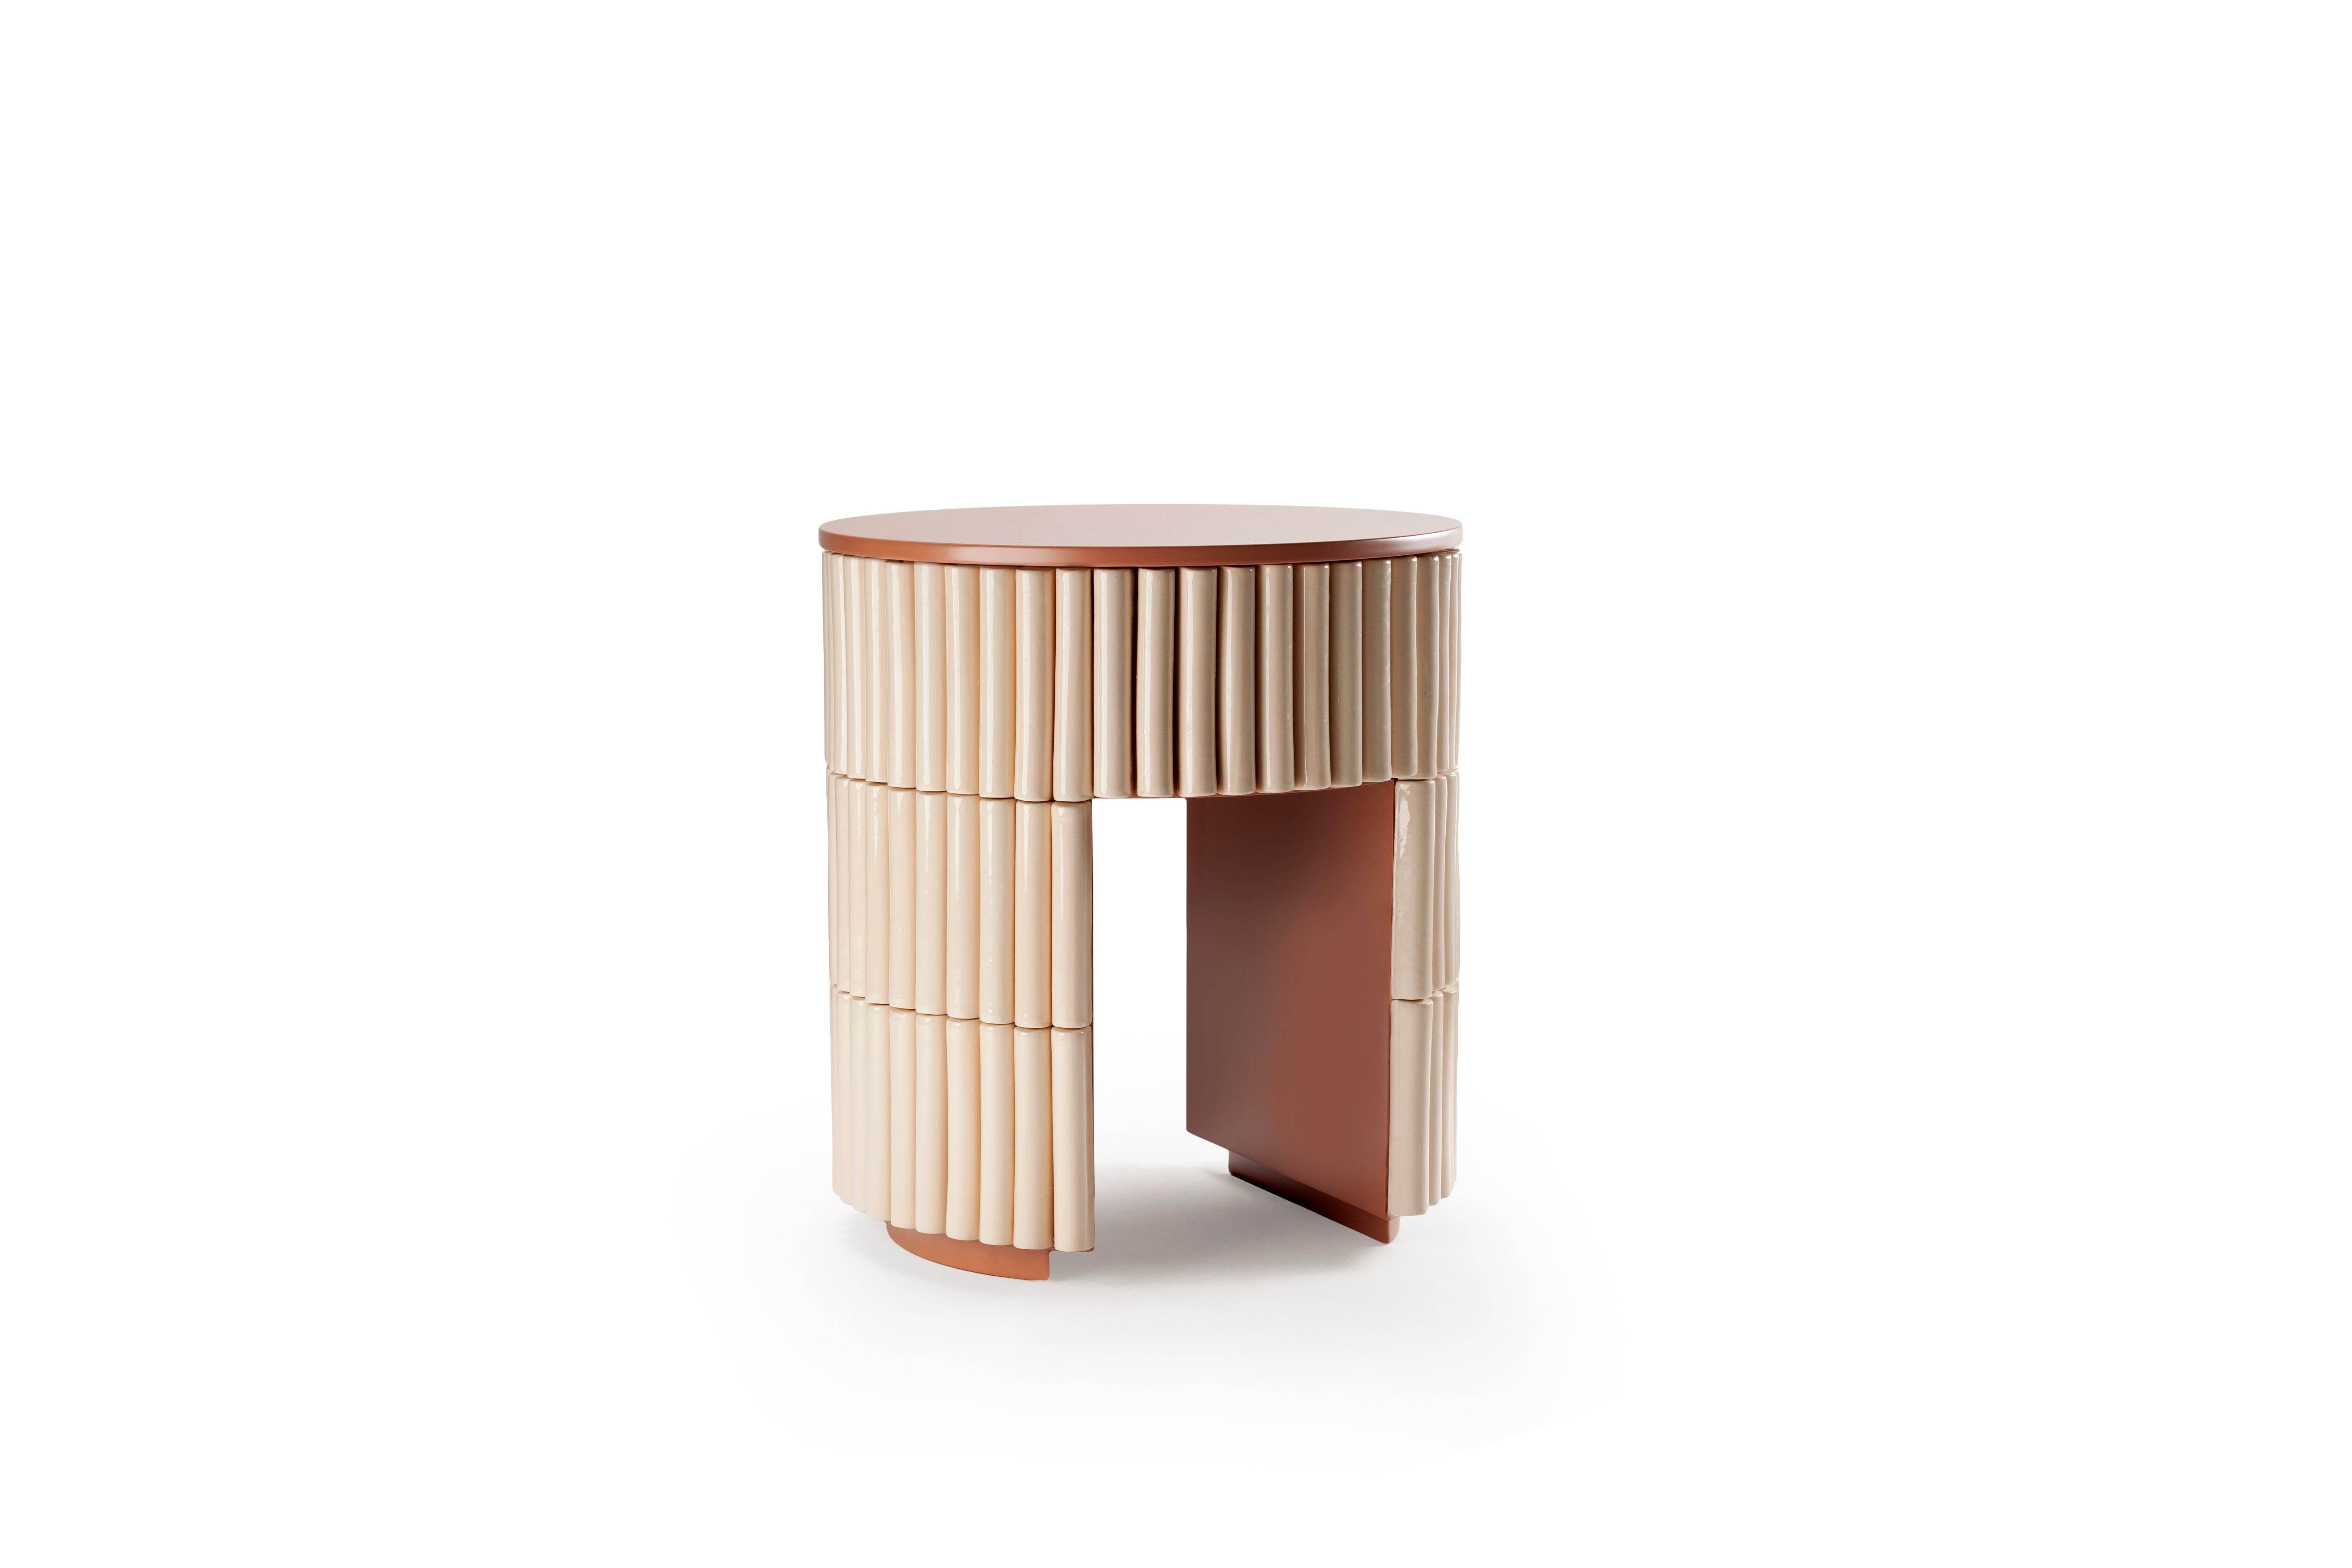 Nouvelle Vague Beistelltisch von Dooq.
Maße: B 54 x T 54 cm x H 37,5 cm
MATERIALIEN: Lackiertes Holz, Mar di Giava Keramikfliesen.

DOOQ ist ein Designunternehmen, das den Luxus des Wohnens zelebriert. Wir entwerfen Designs, die die Sinne